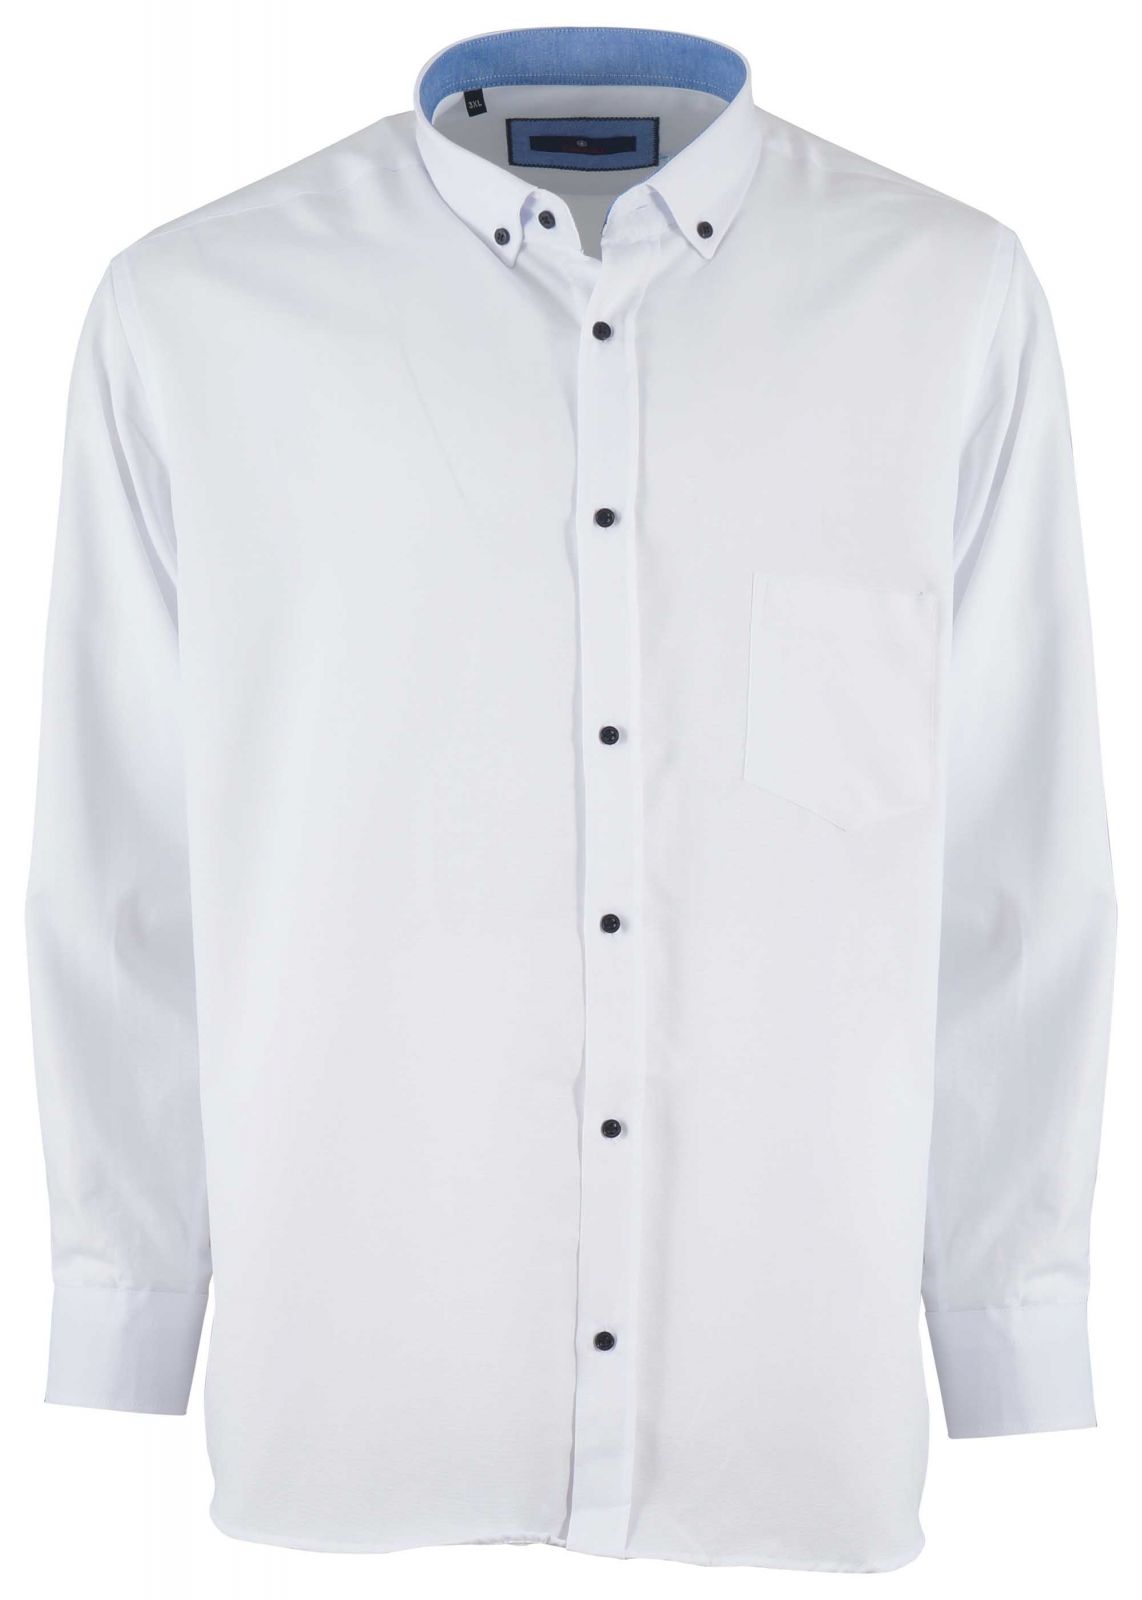 Ανδρικό πουκάμισο τσεπάκι & κουμπιά στο γιακά. Oversize Collection. ΛΕΥΚΟ